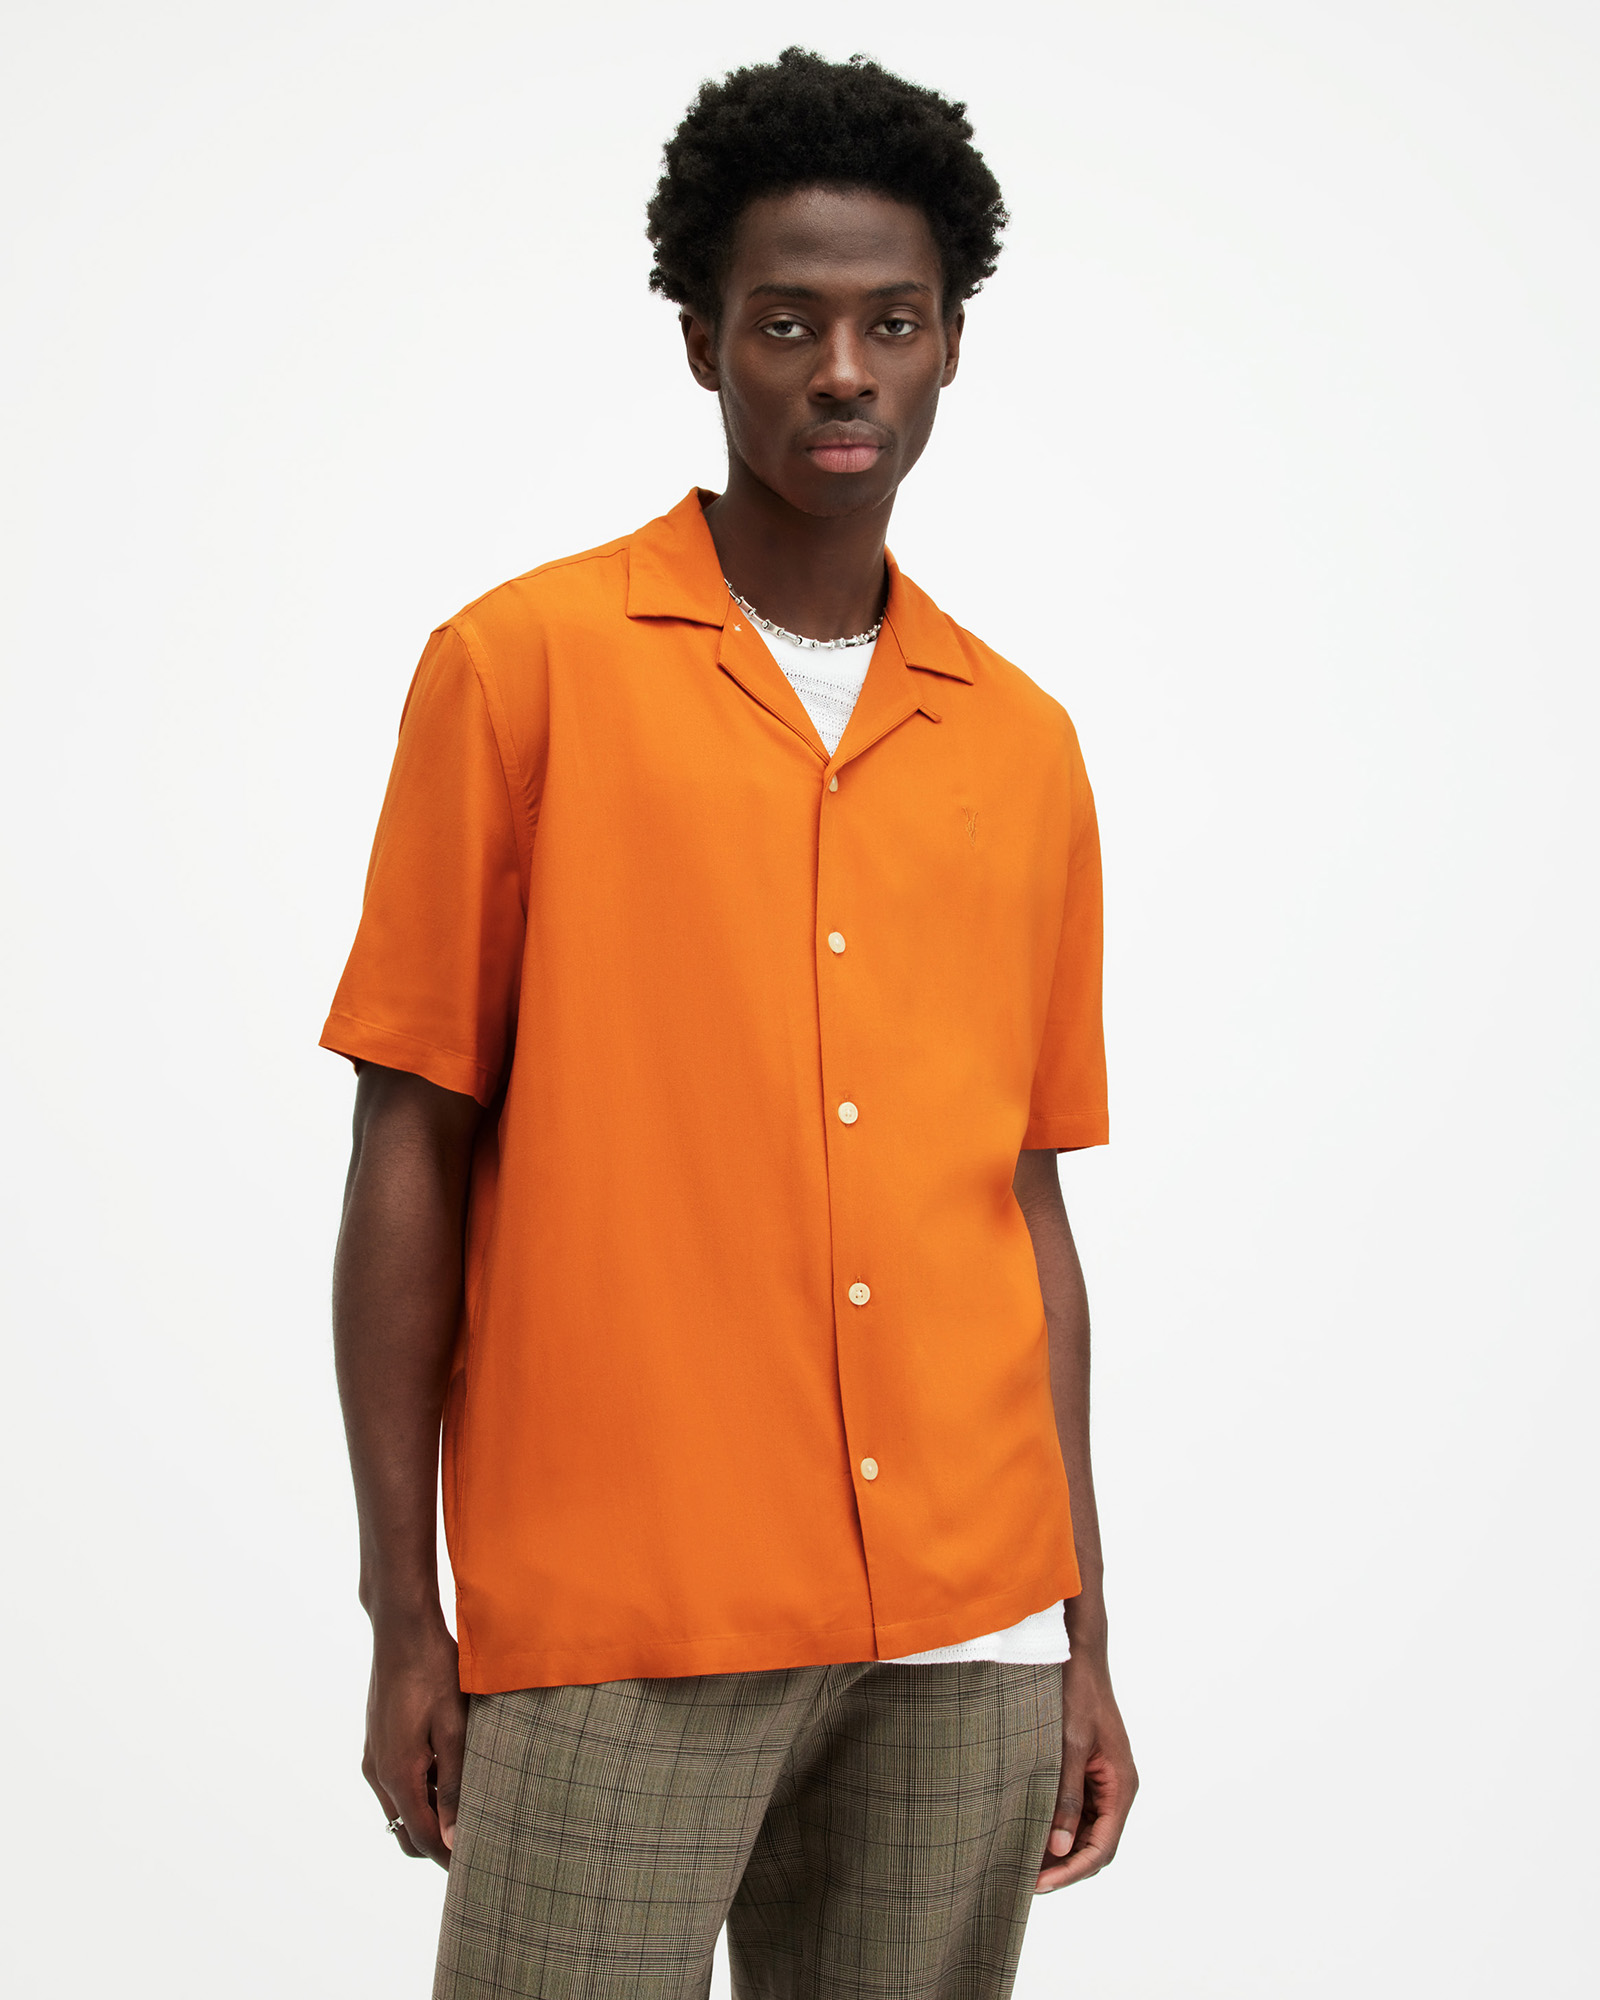 AllSaints Venice Revere Collar Ramskull Shirt,, Burnt Orange